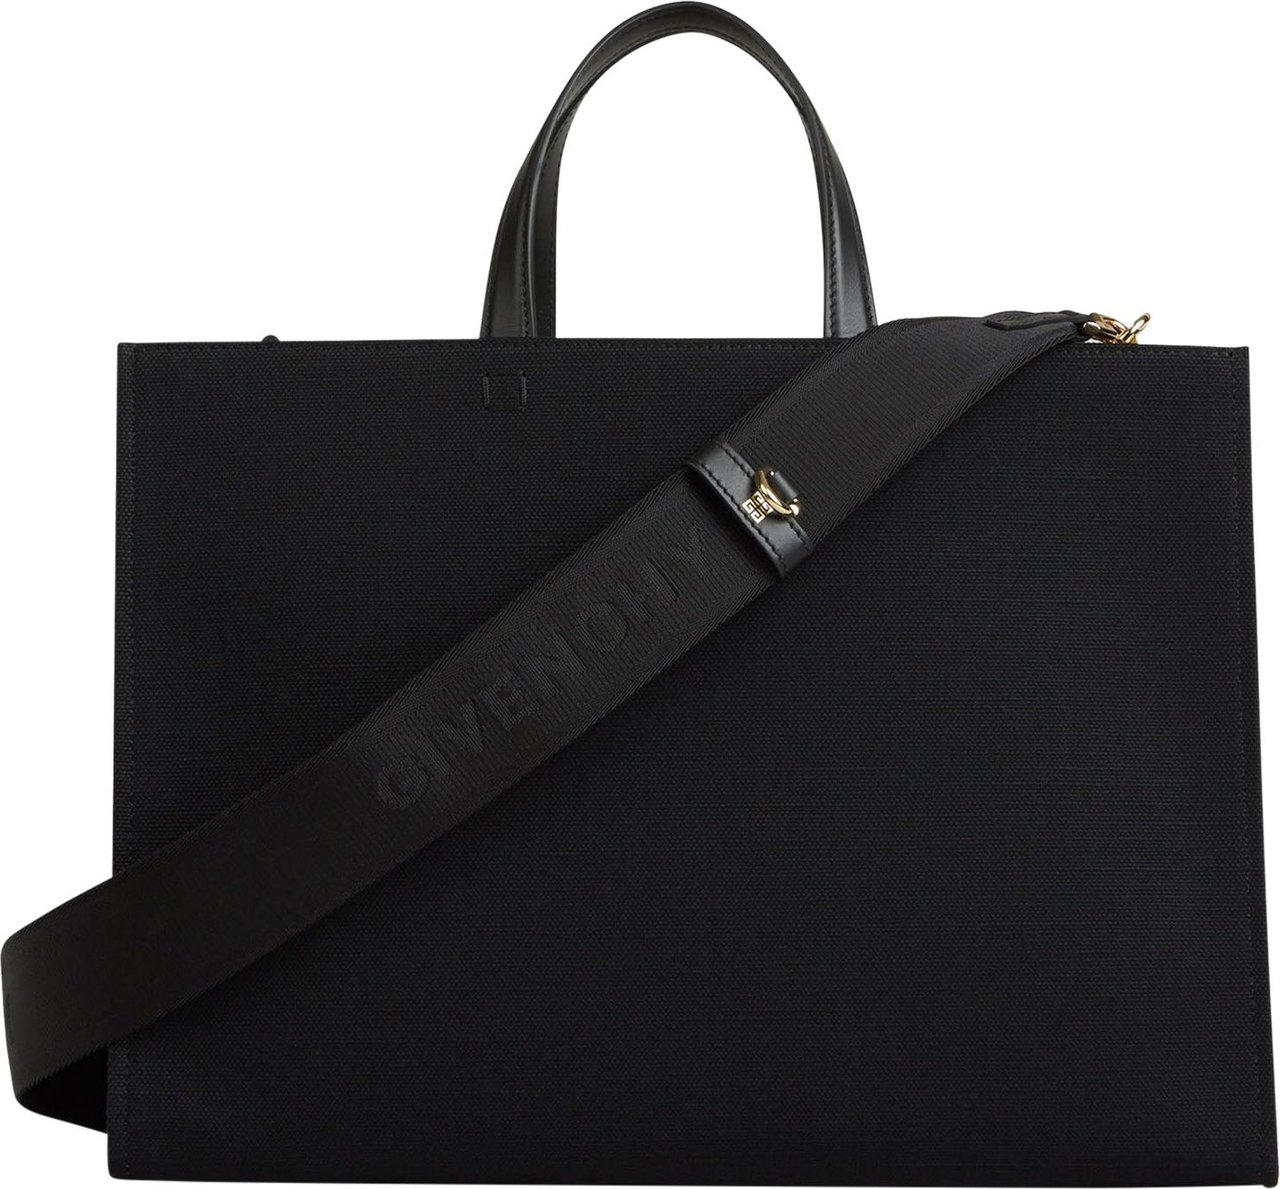 Givenchy G-Tote M Bag Zwart